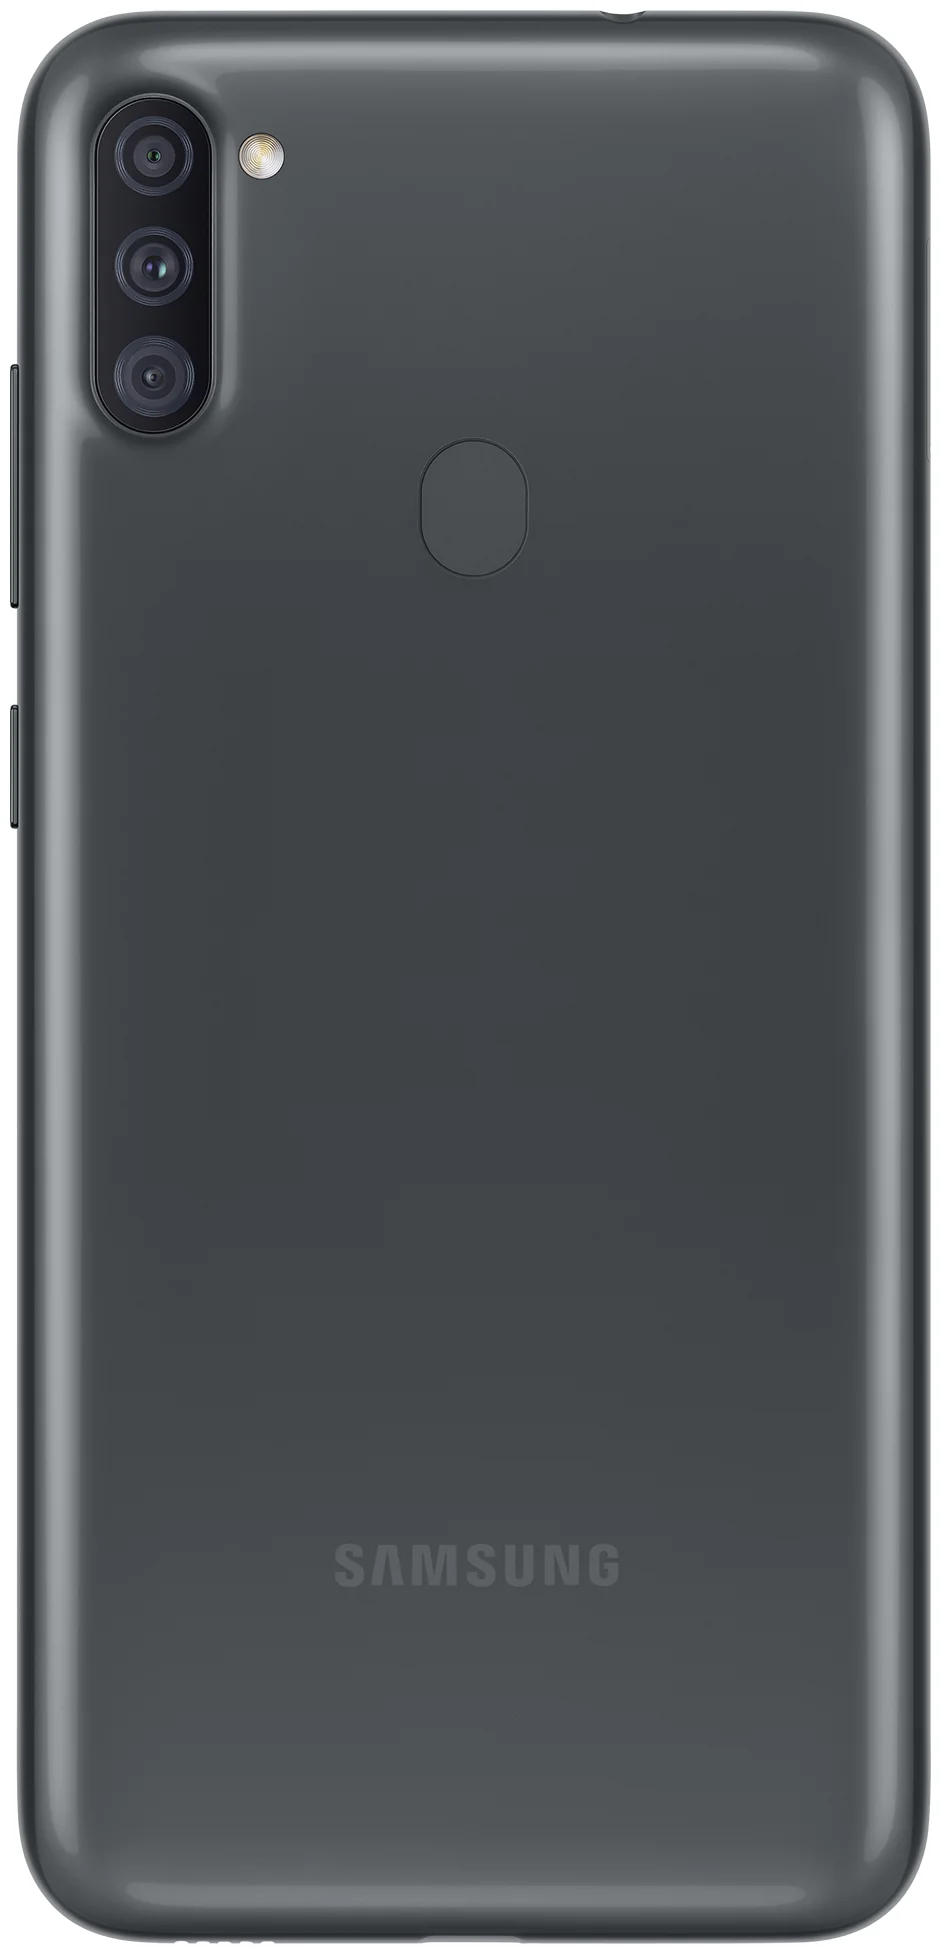 Samsung Galaxy A11 - оперативная память: 2 ГБ